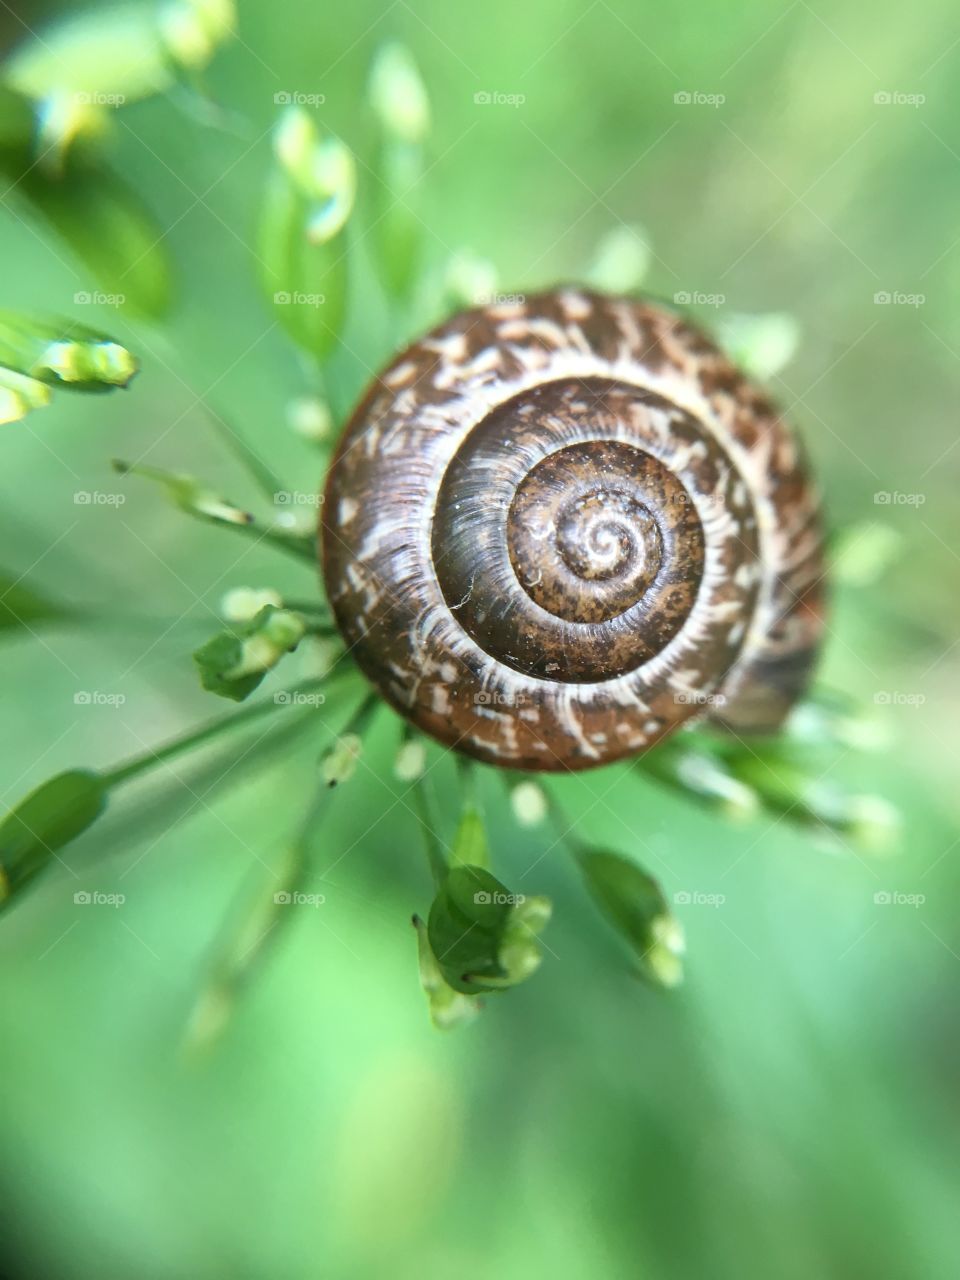 Patterned snail